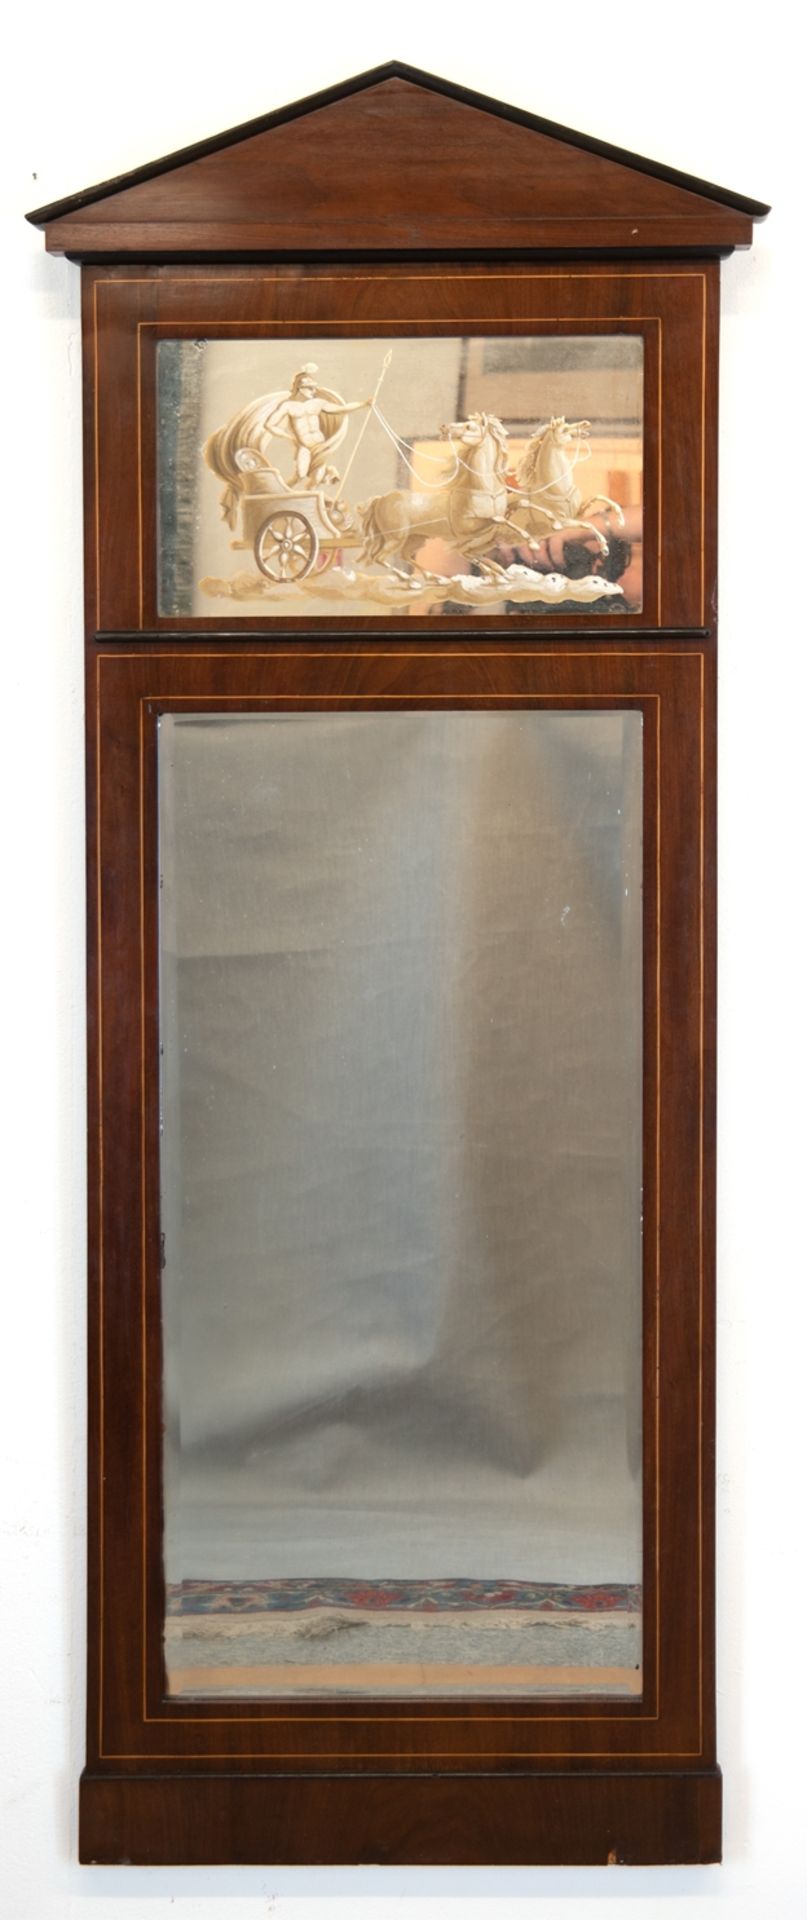 Biedermeier-Spiegel, Mahagoni furniert mit Fadenintarsie und ebonisierten Leisten, Dreiecksgiebel, 